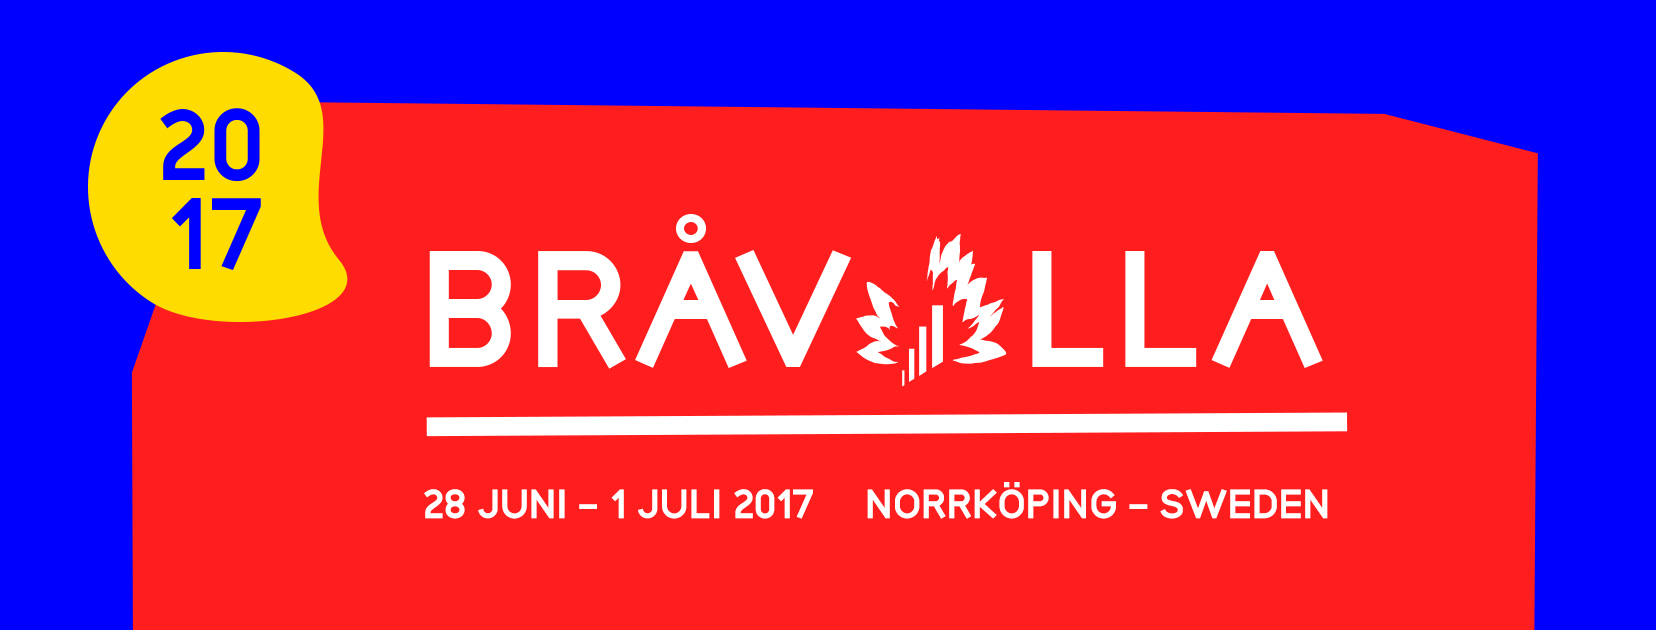 Festival Bråvalla